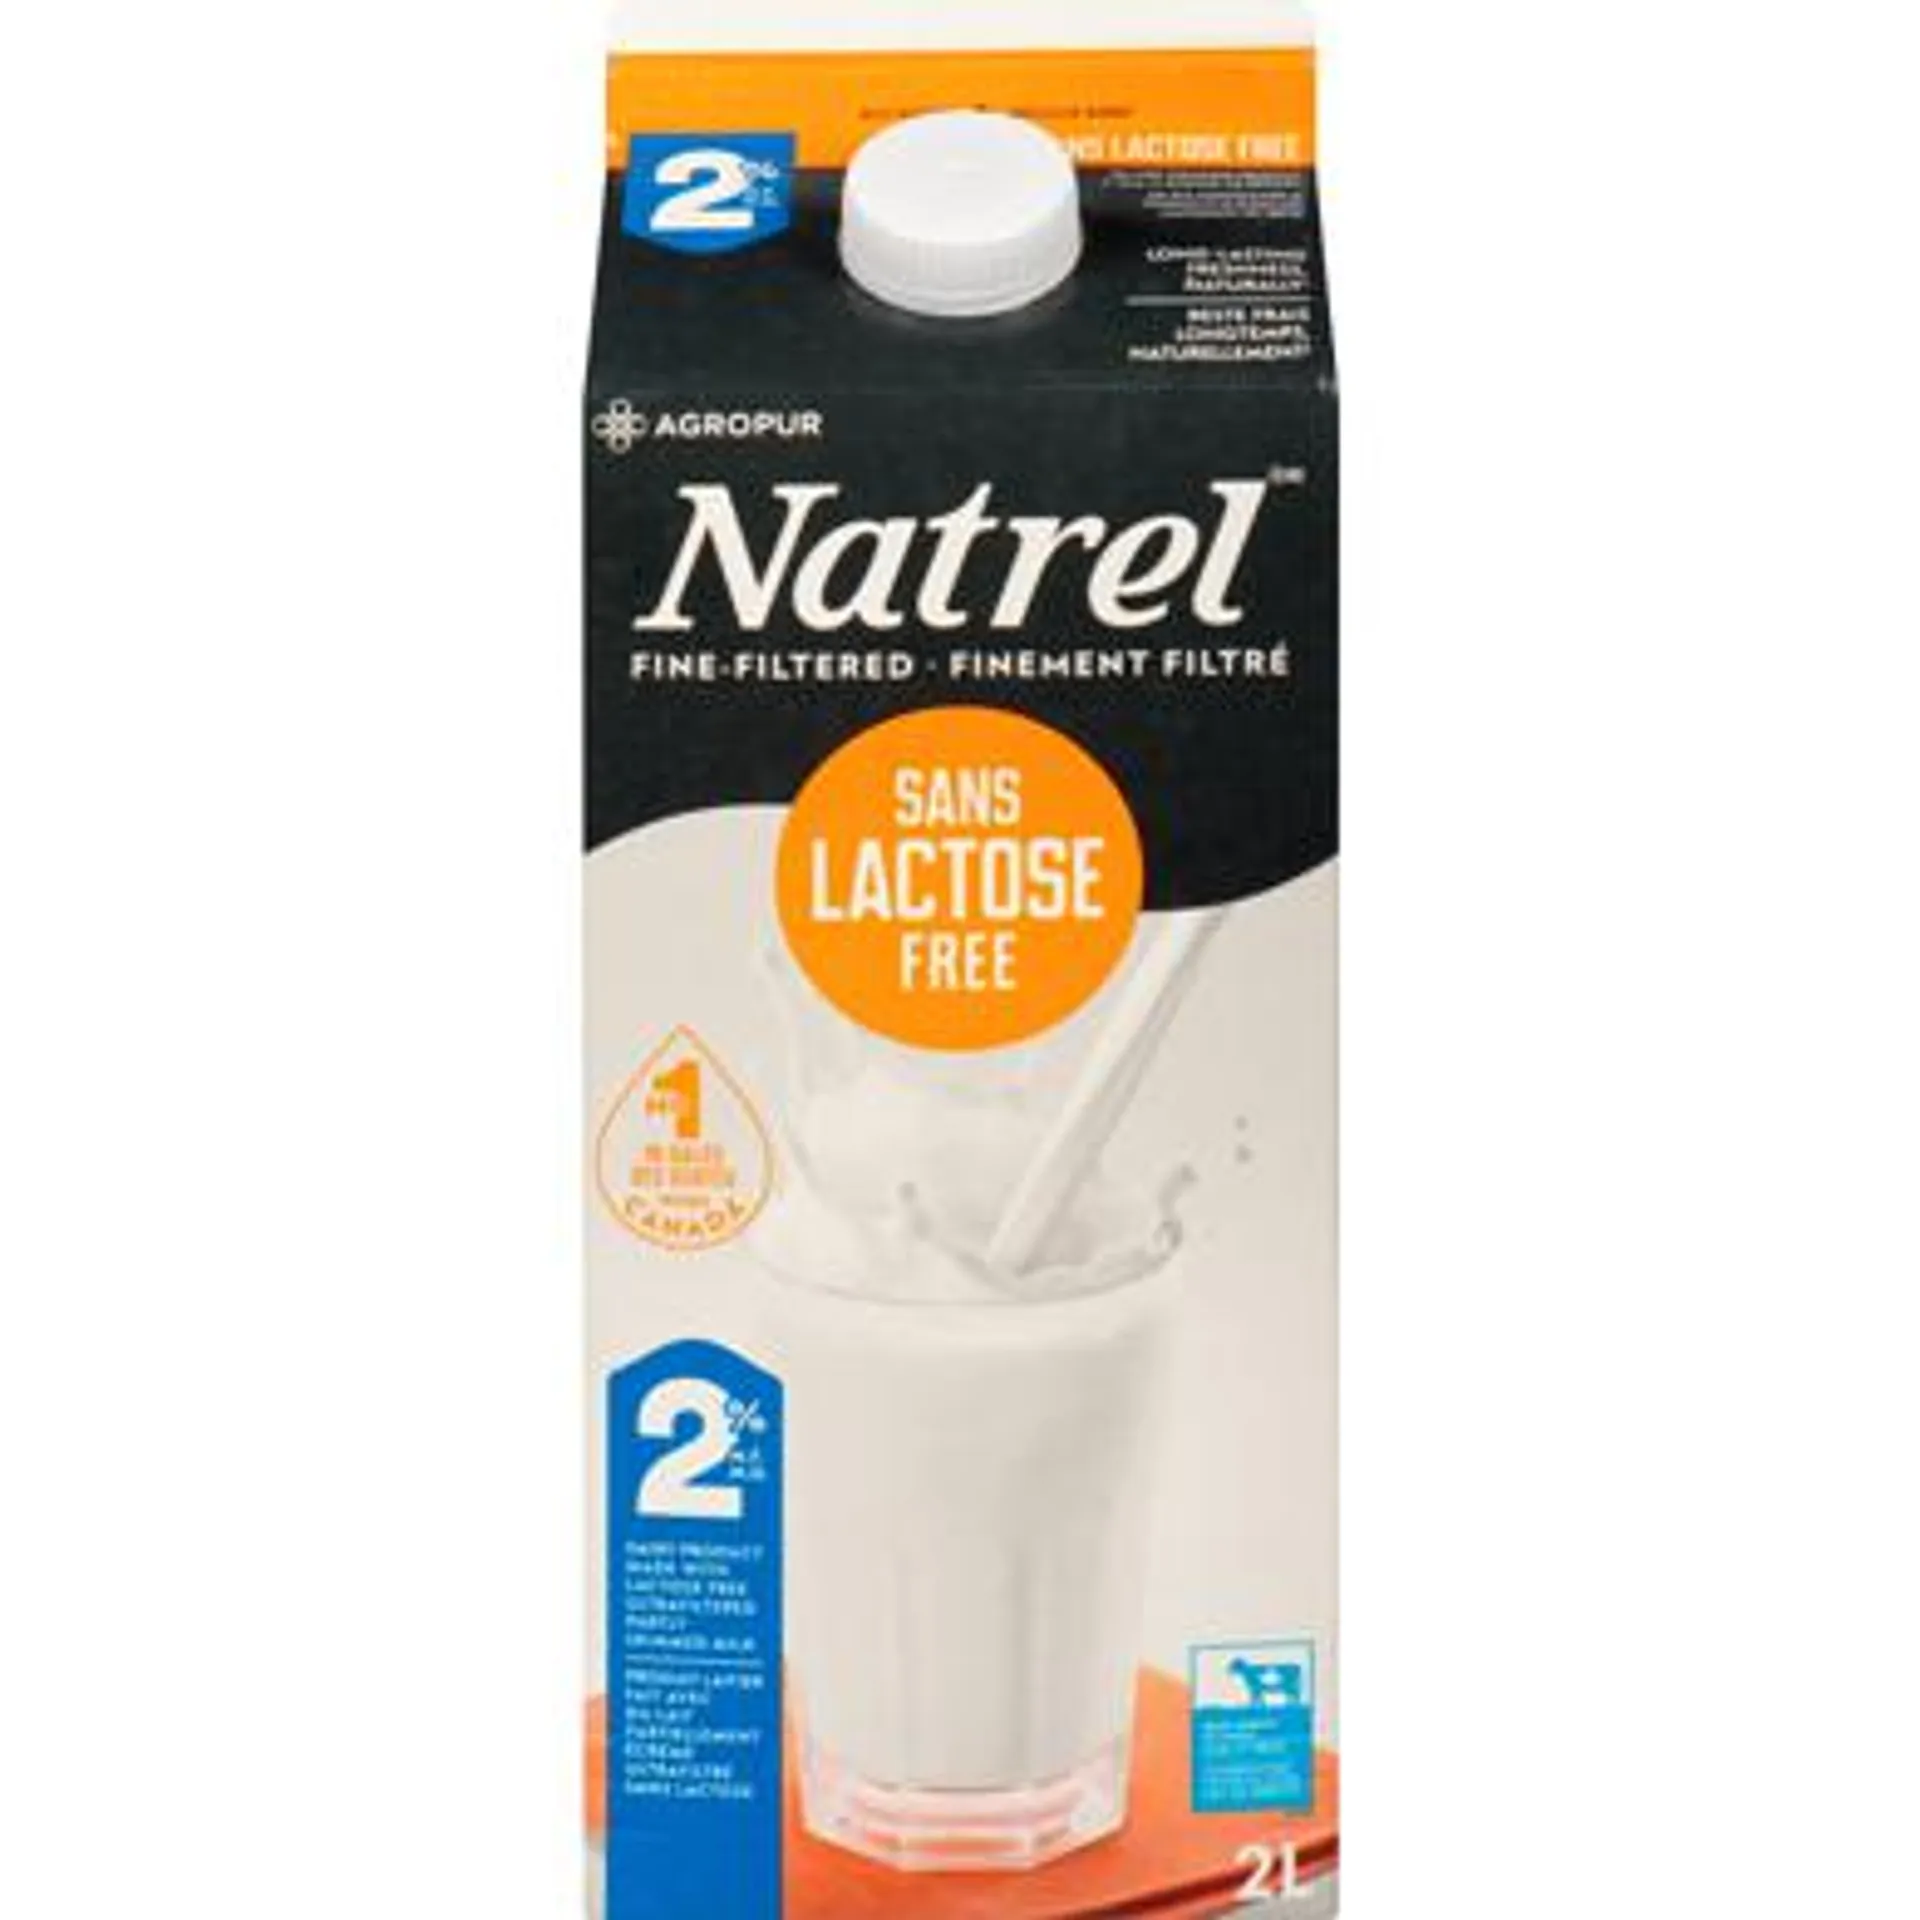 Produit laitier sans lactose 2% (2L)